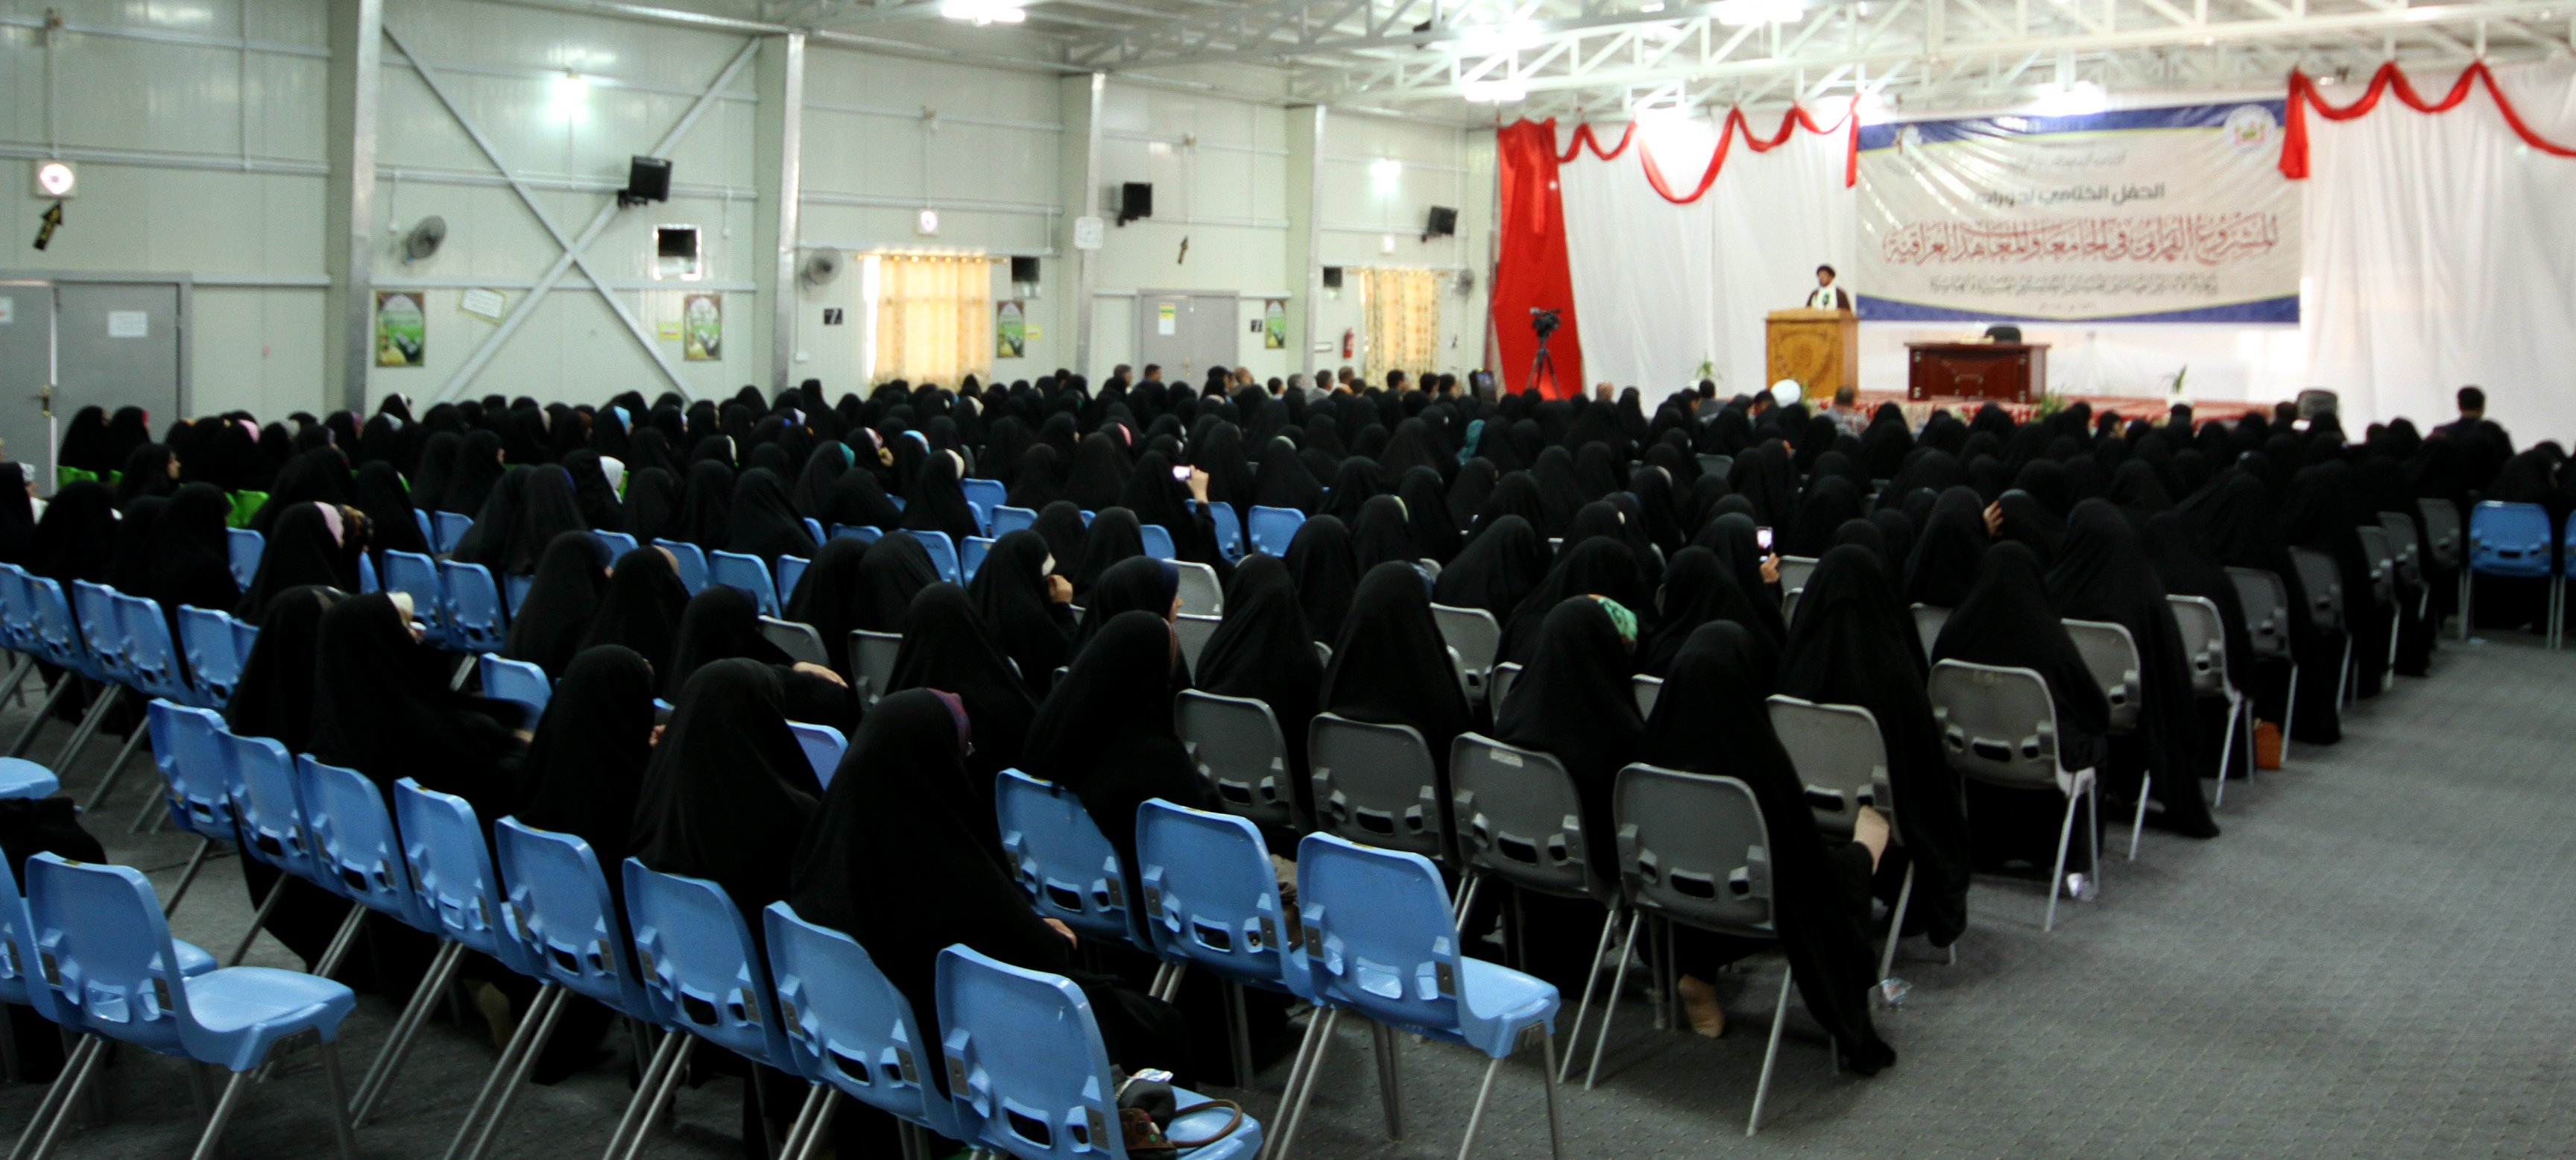 حفل ختام دورات المشروع القرآني في الجامعات والمعاهد العراقية.